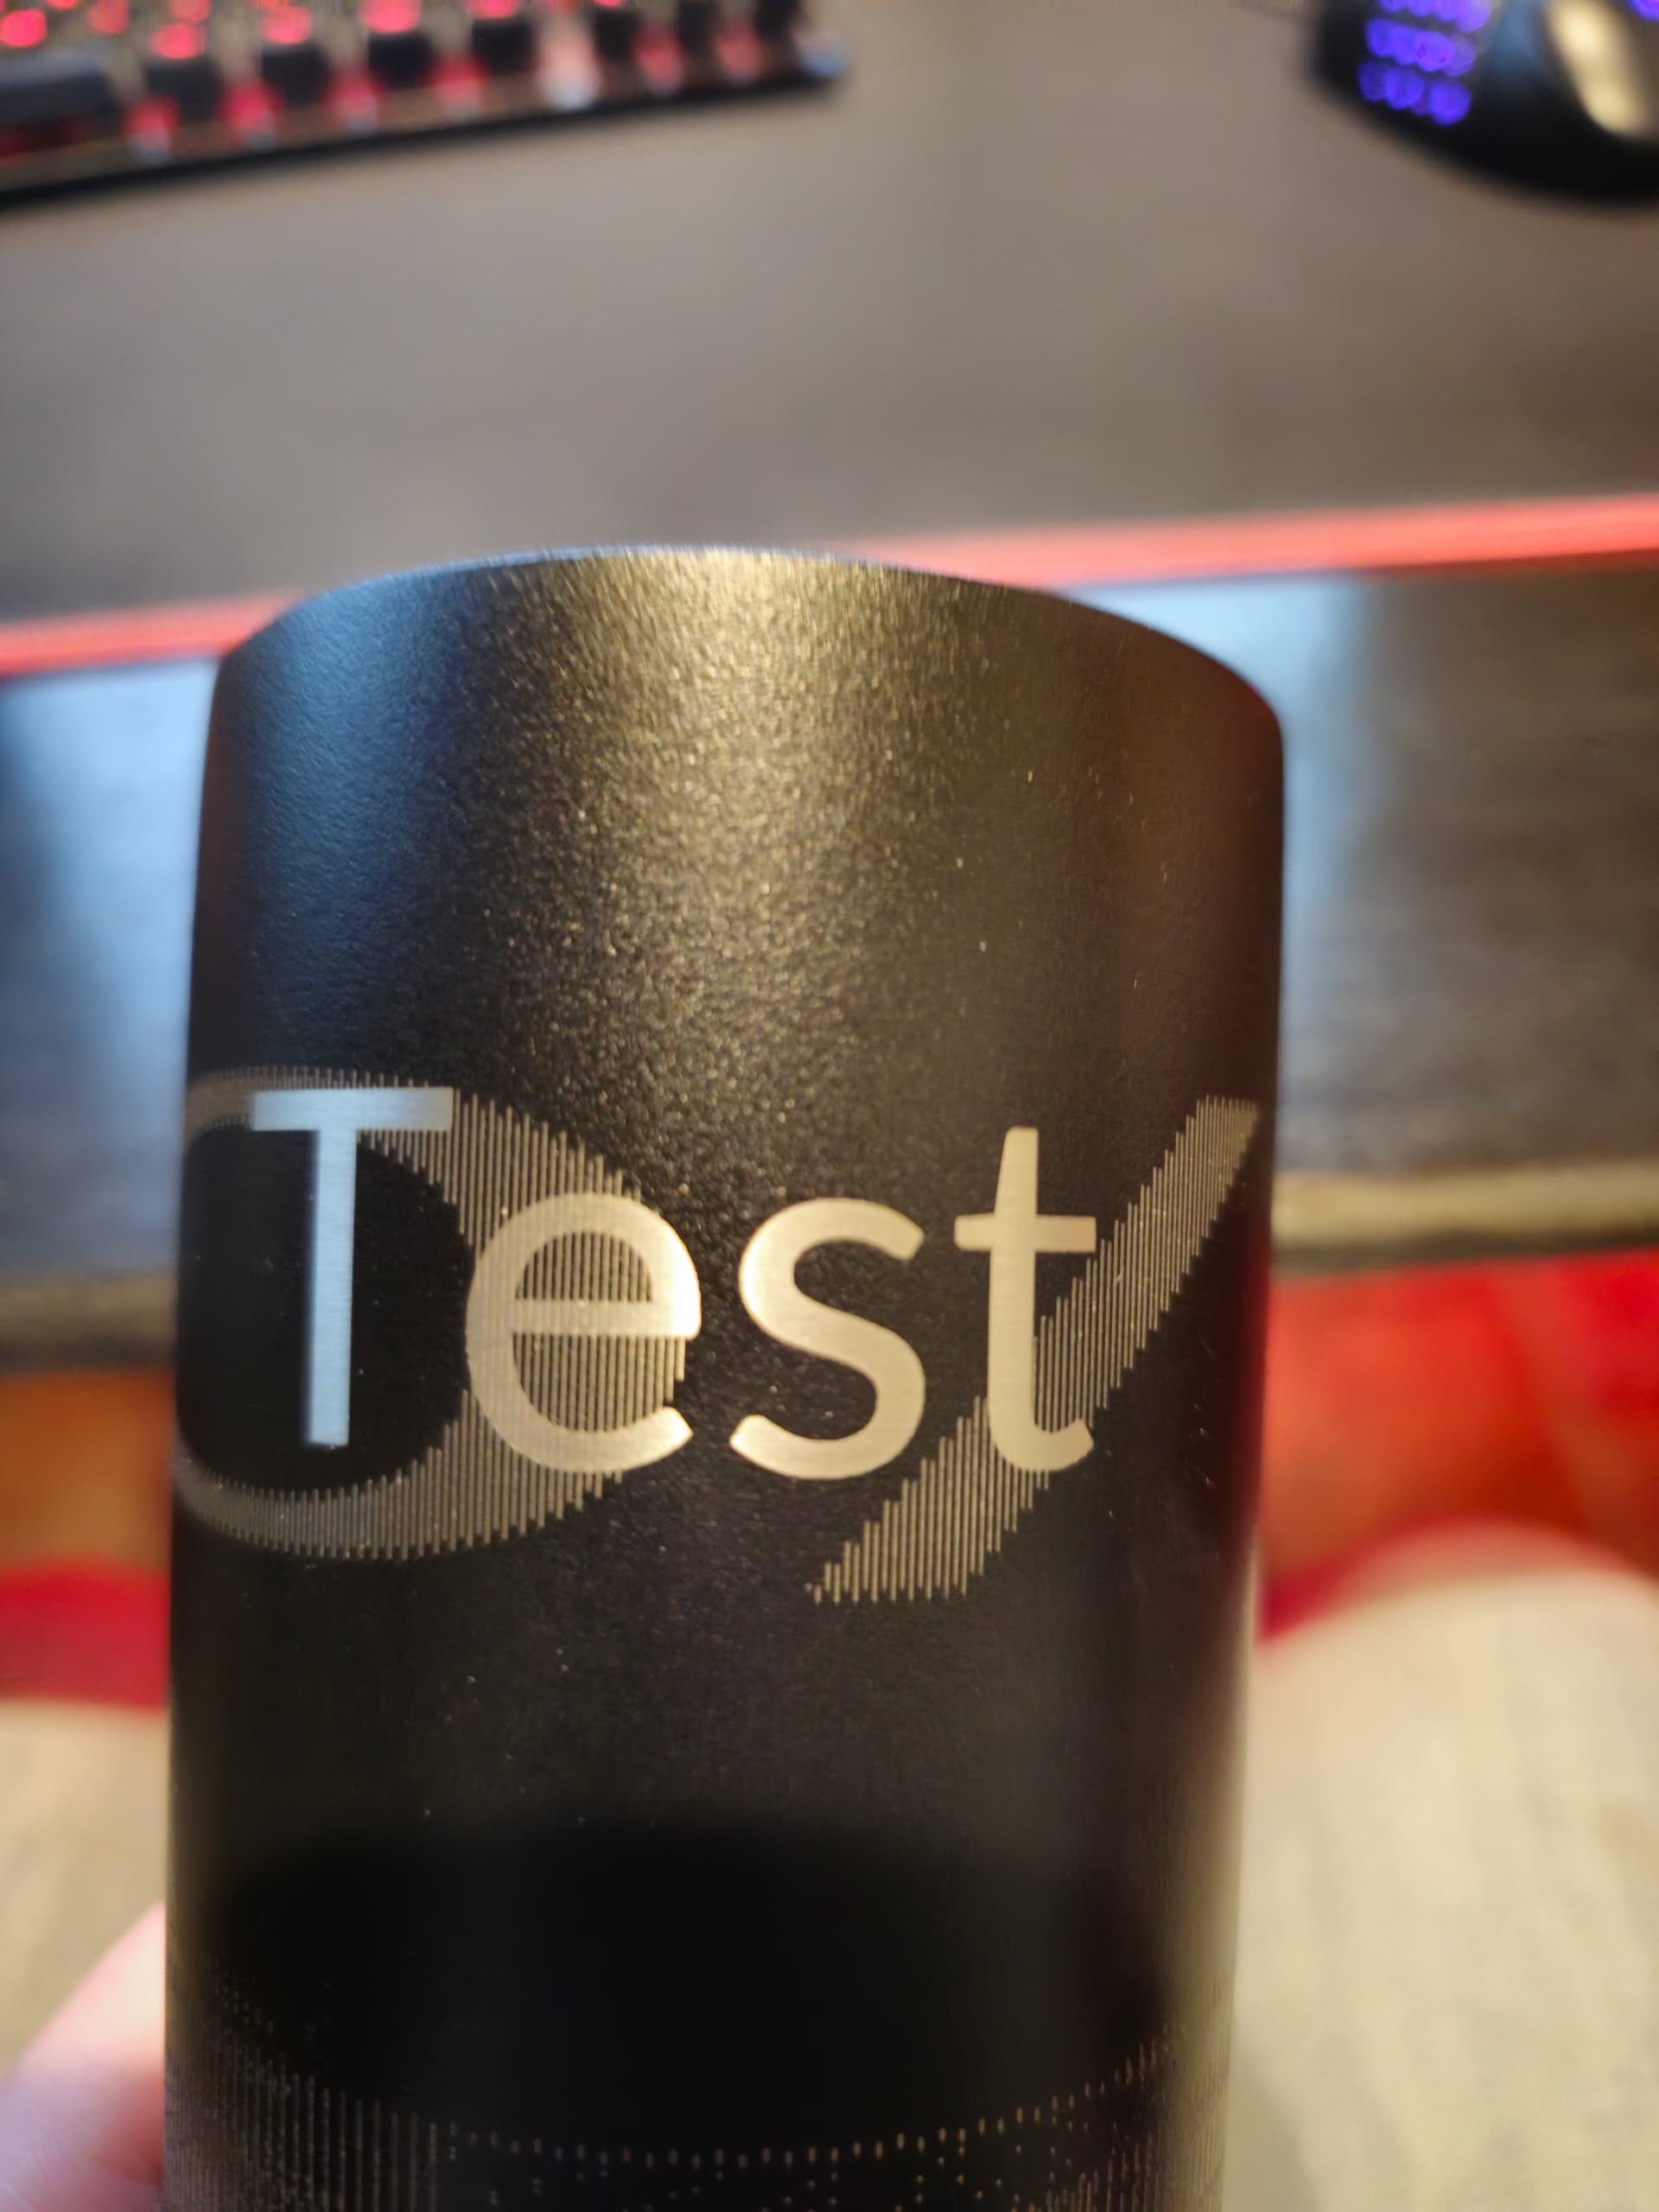 Testing The Tesla Mug